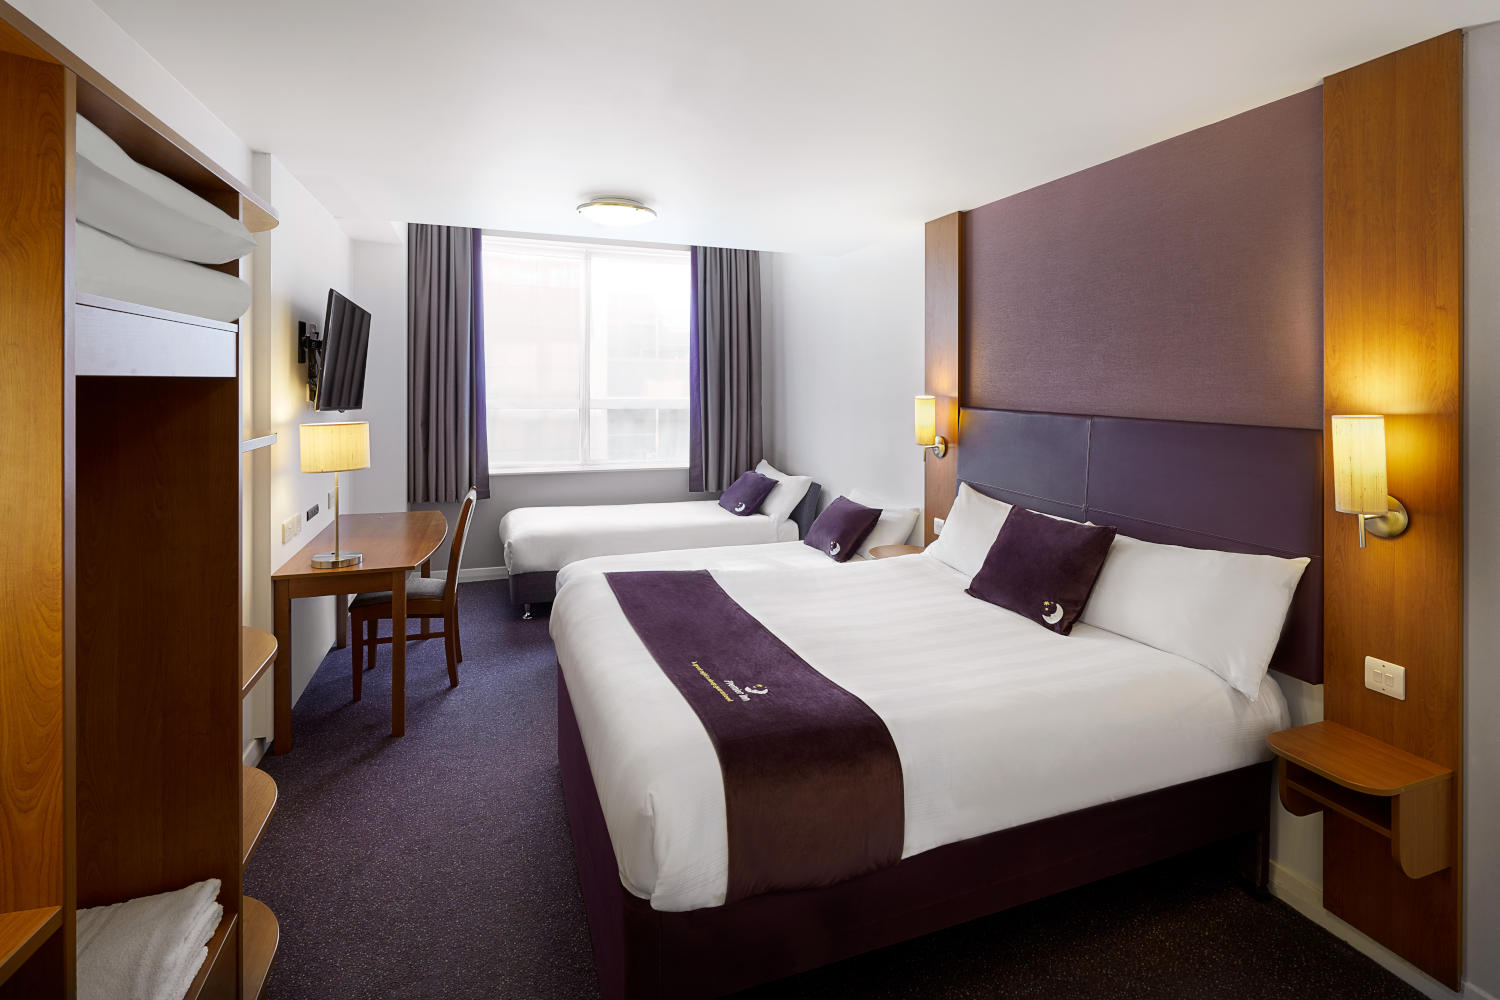 Premier Inn bedroom Premier Inn Wrexham City Centre hotel Wrexham 03333 219307